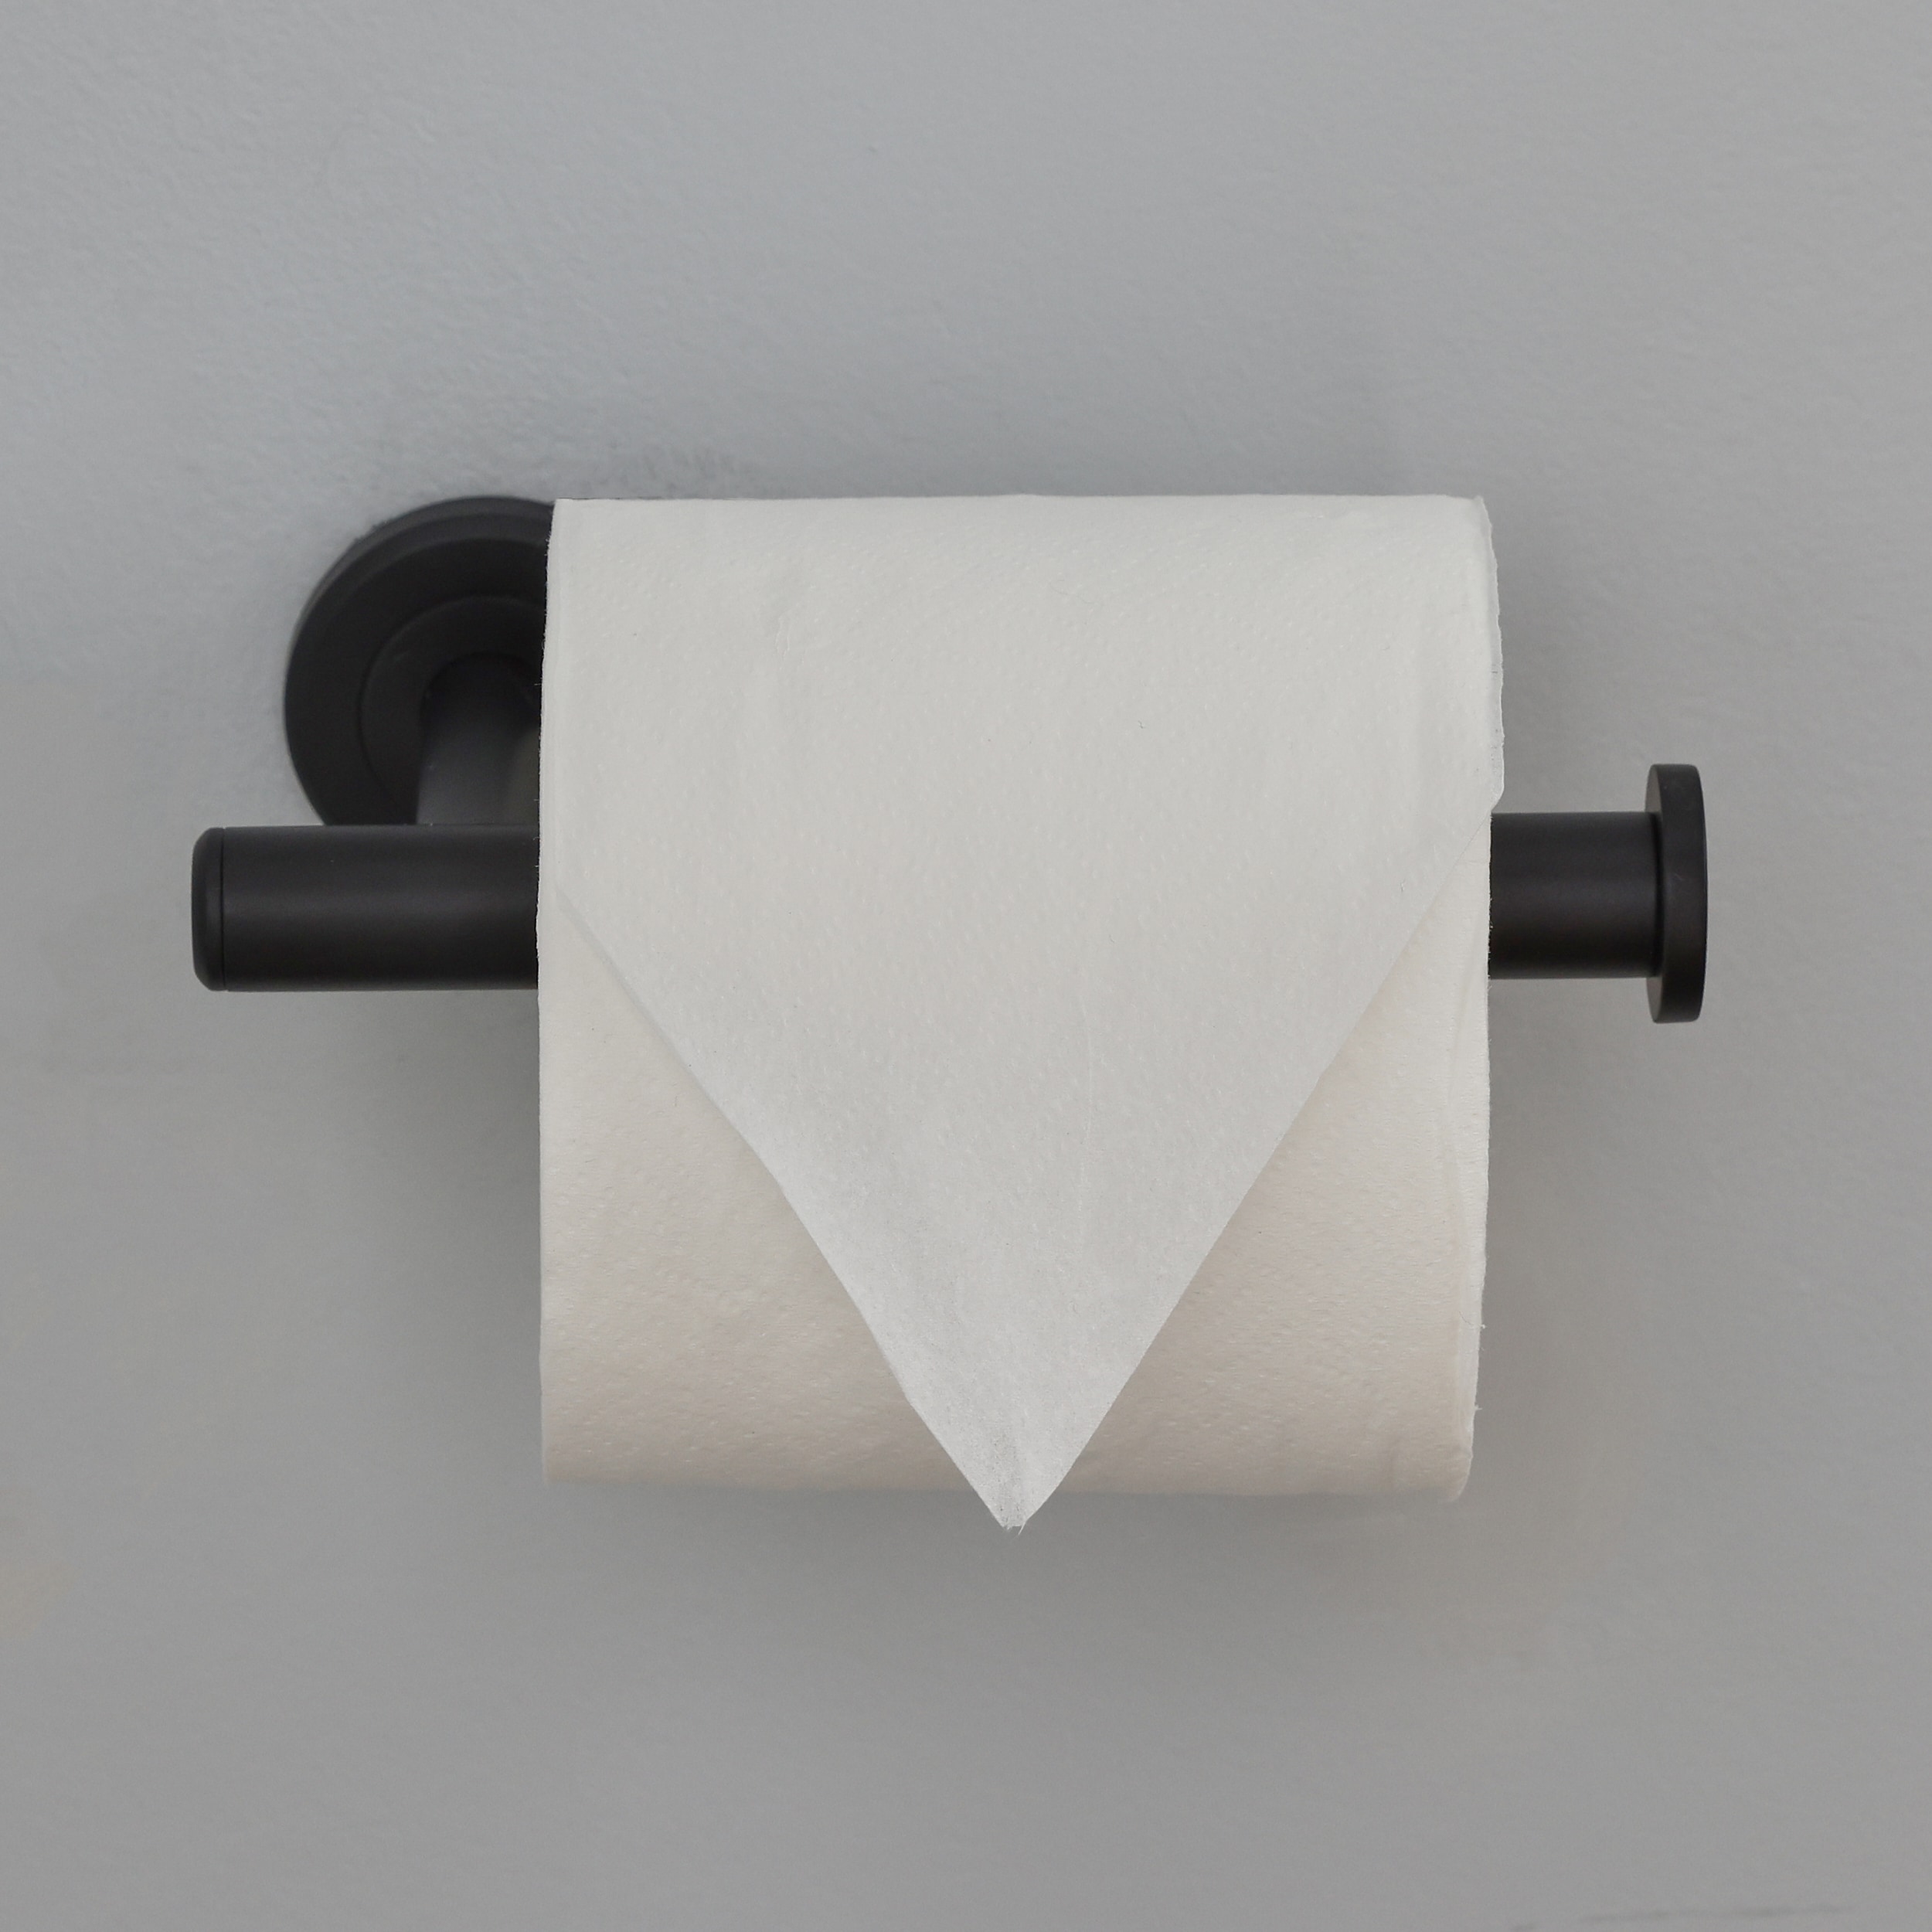 Better Homes & Gardens Wall Mount Toilet Paper Holder, Matte Black 